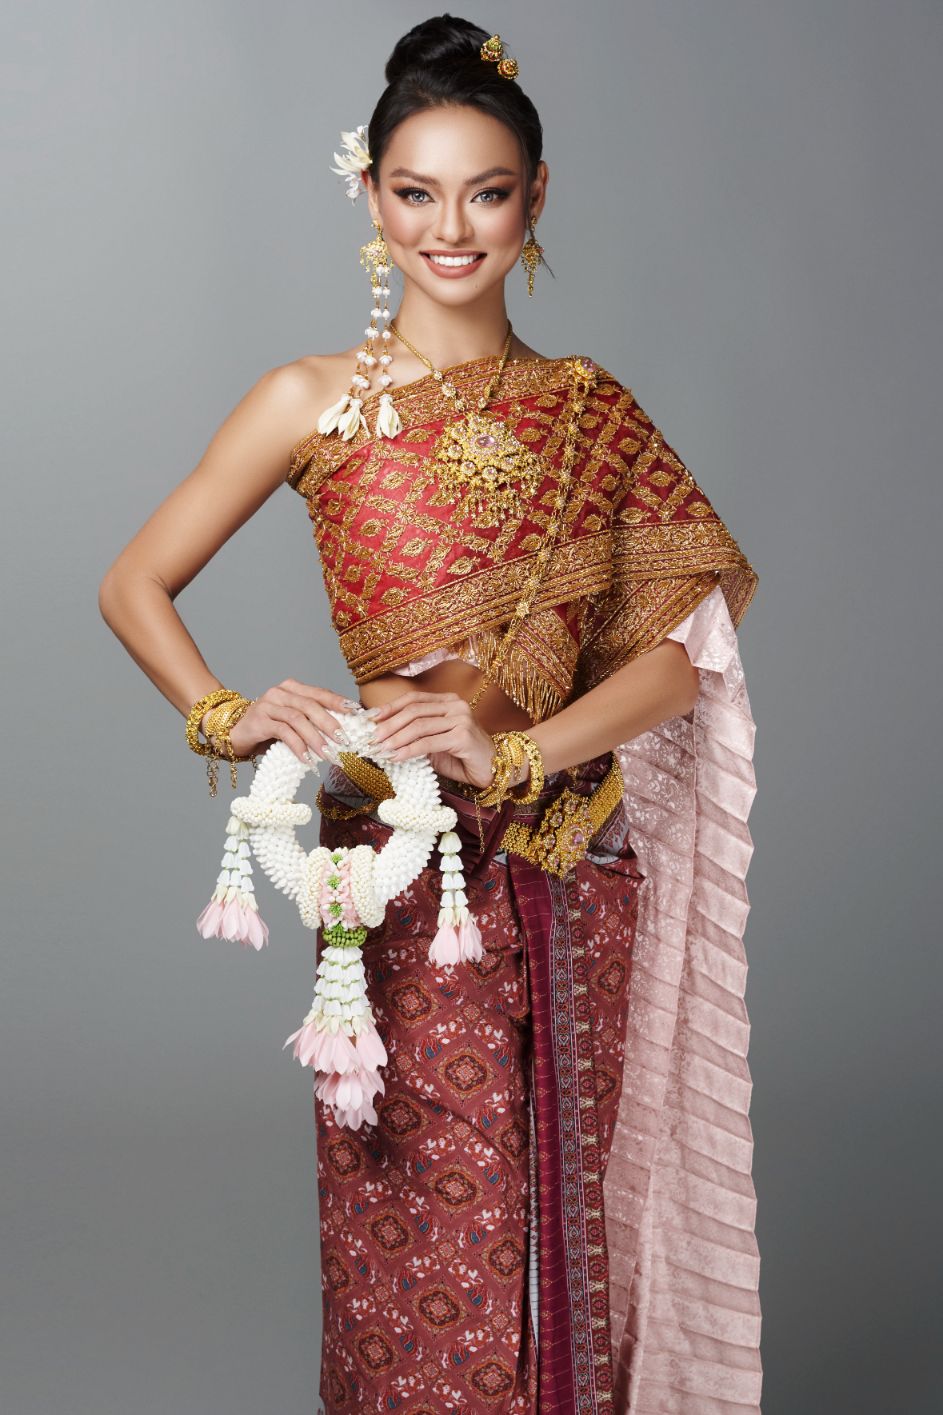 Mai Ngô 1 Mai Ngô đẹp rạng rỡ trong trang phục truyền thống Thái Lan